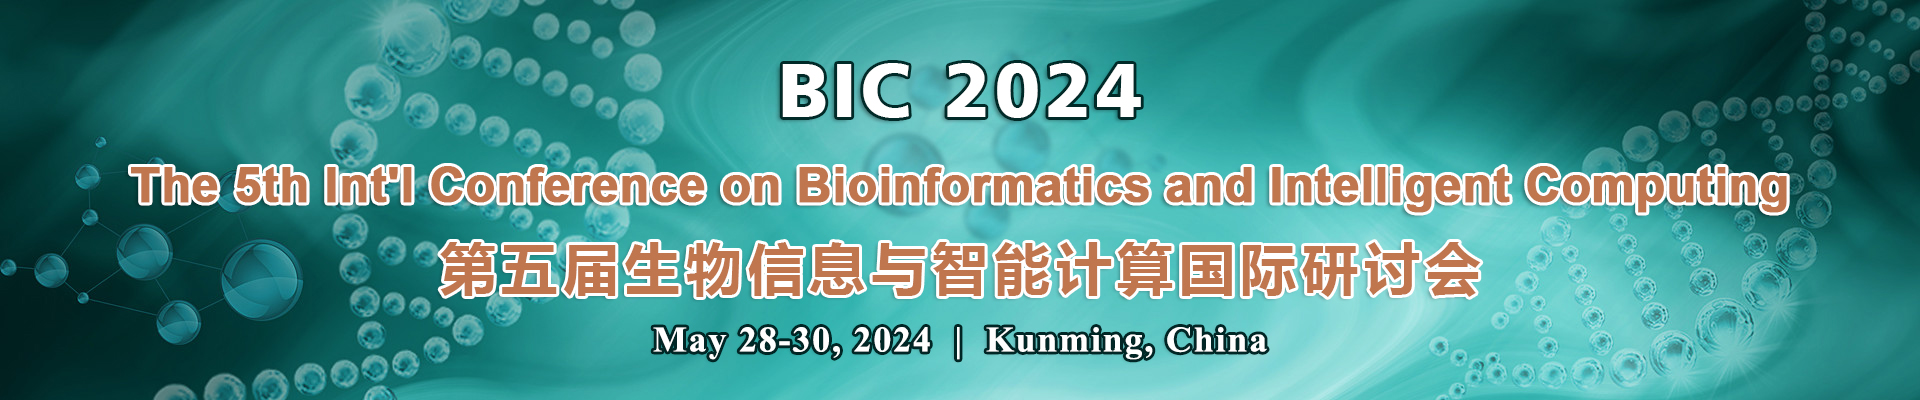 第五届生物信息与智能计算国际研讨会(BIC 2024)